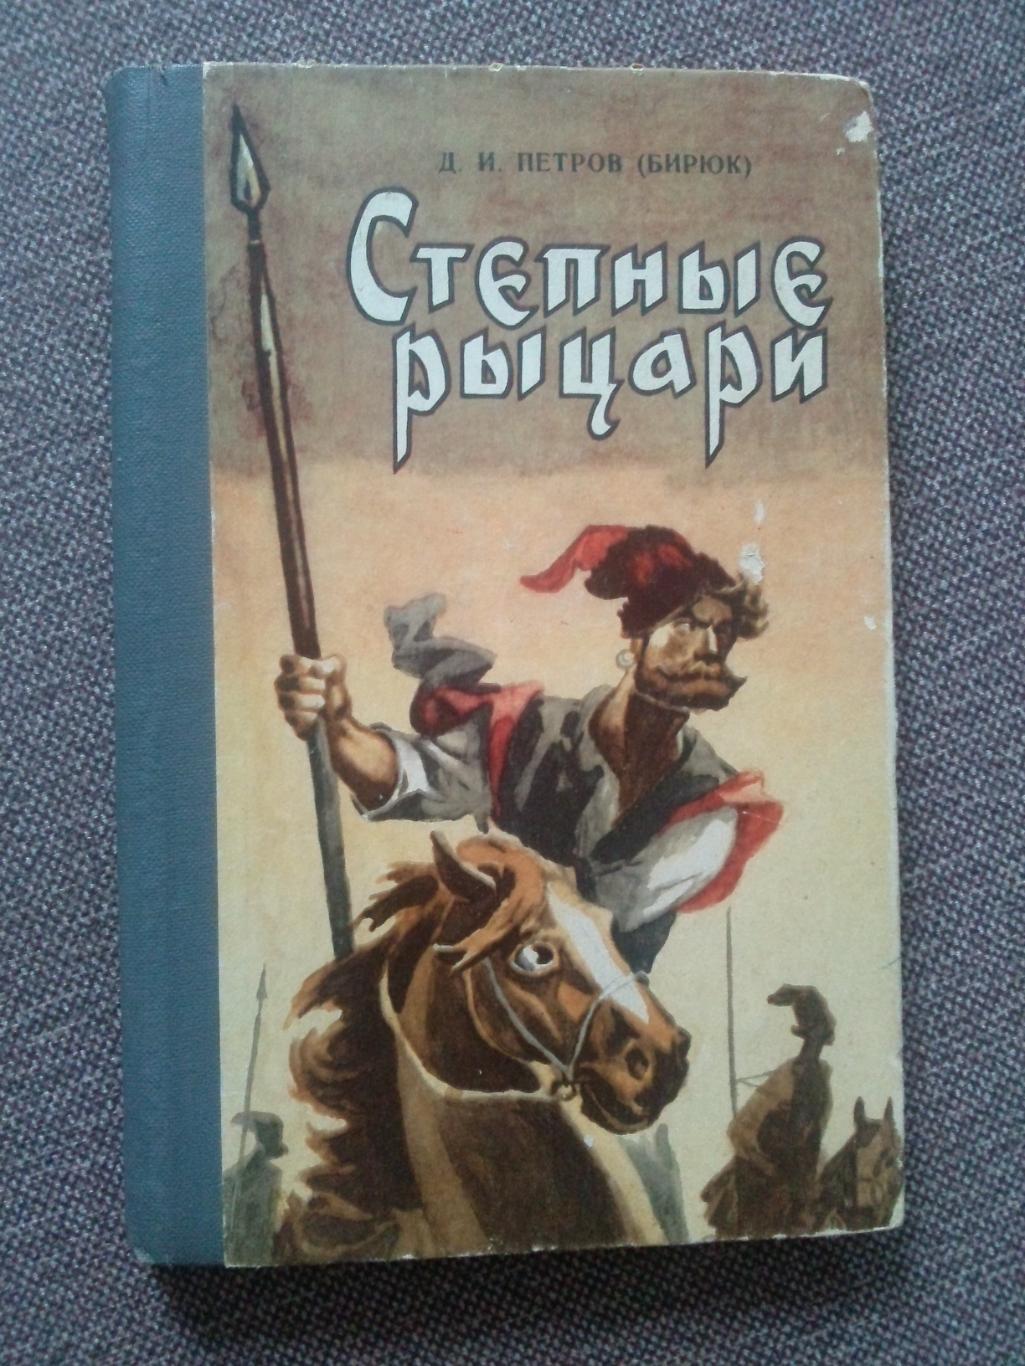 Д. И. Петров (Бирюк) - Степные рыцари 1983 г. (Донские казаки Казачество)